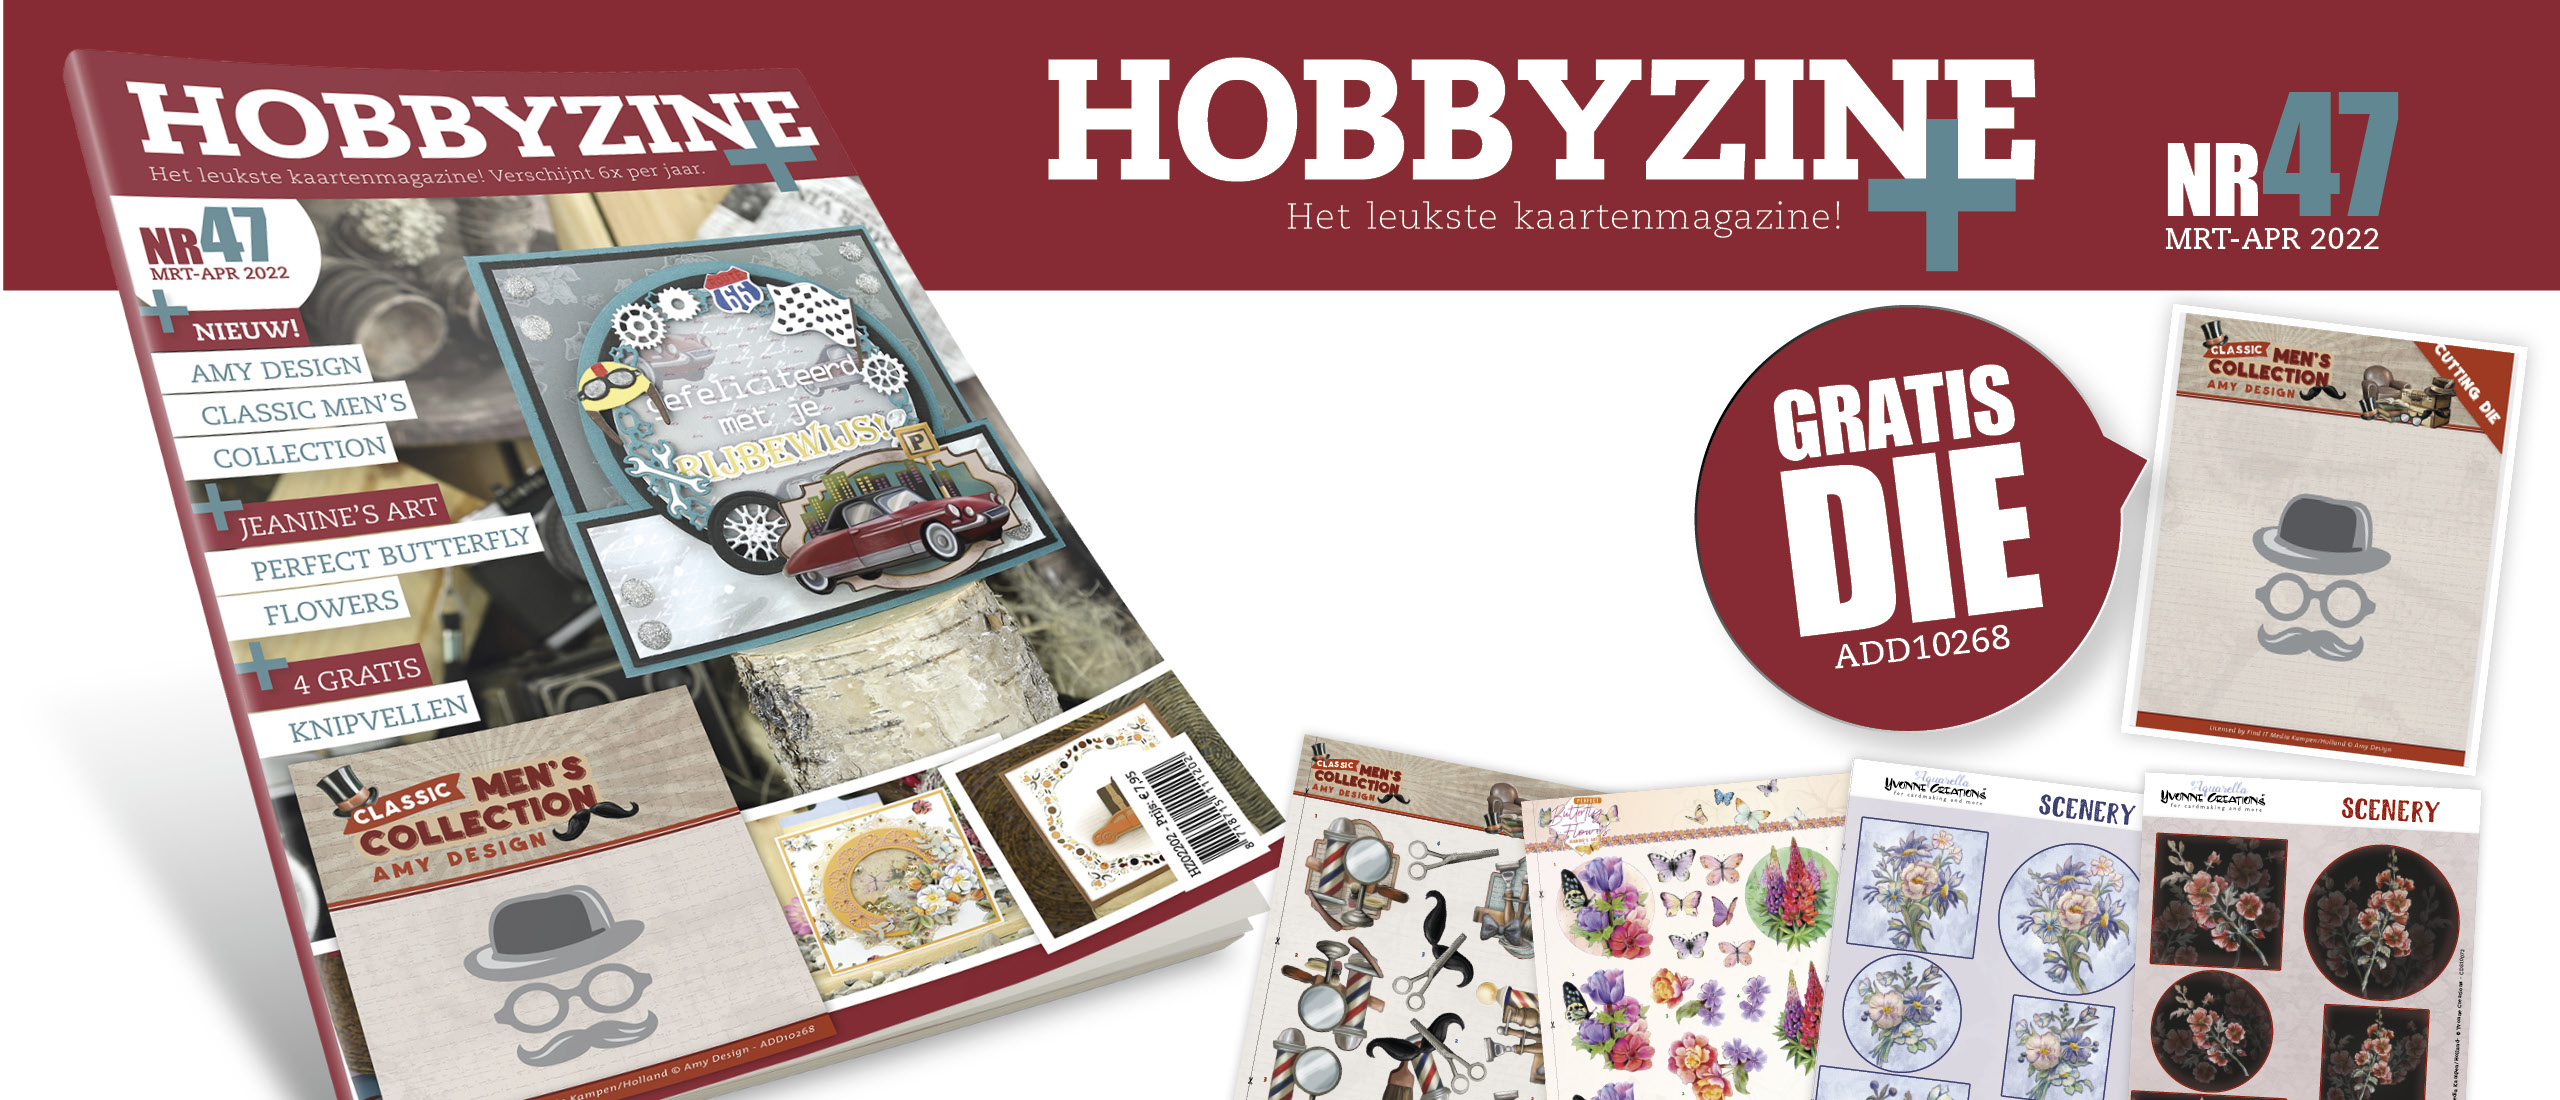 Hobbyzine 47 is er!